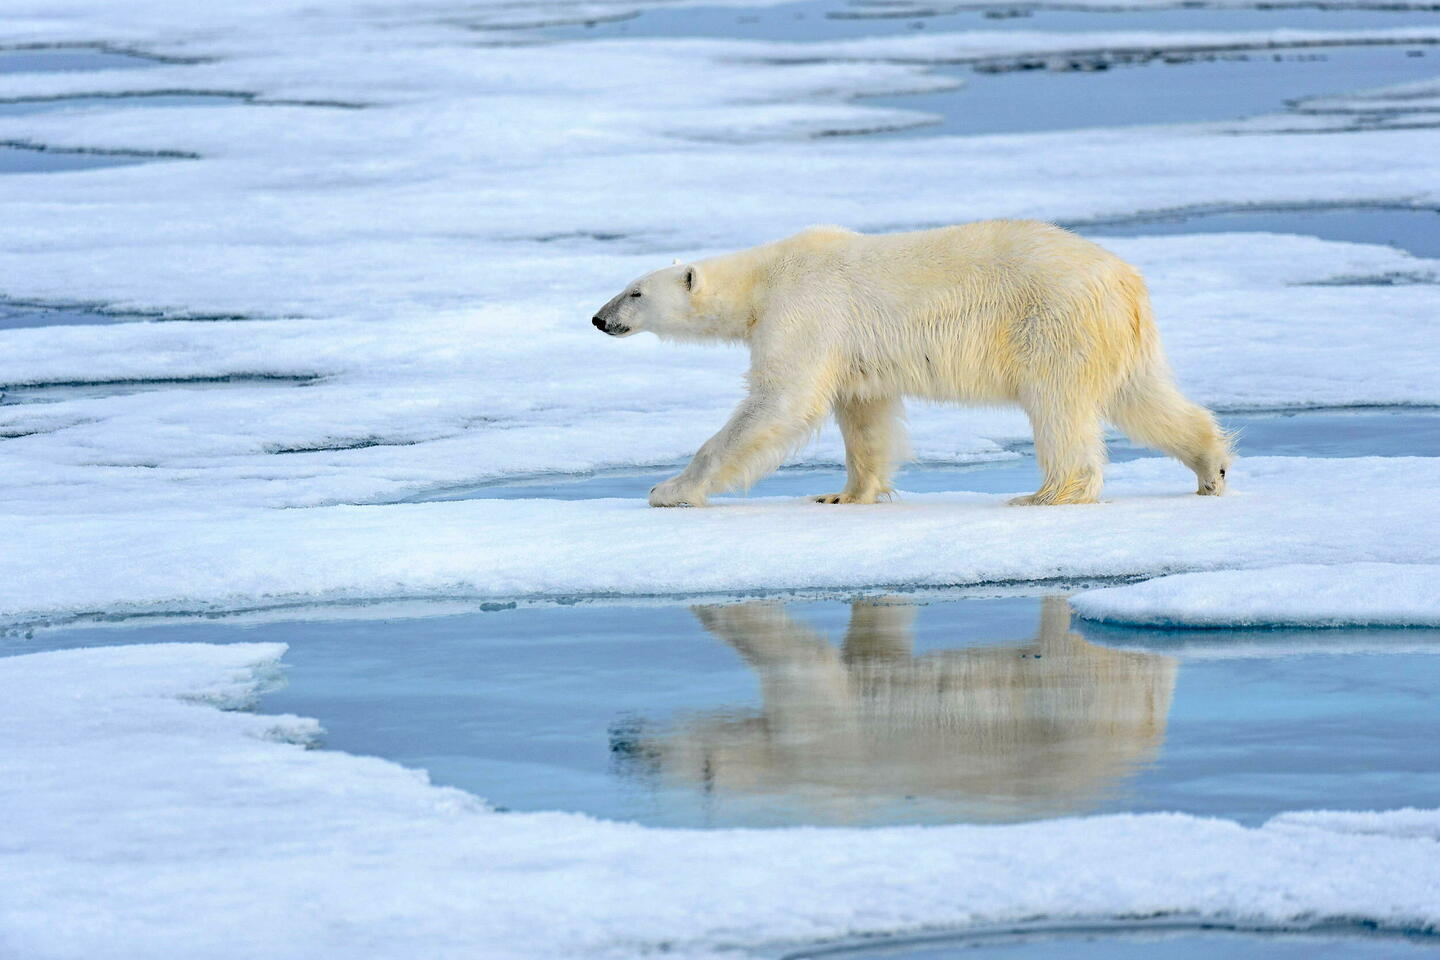 « Le gros problème de l’ours polaire, c’est la période de présence de la banquise »